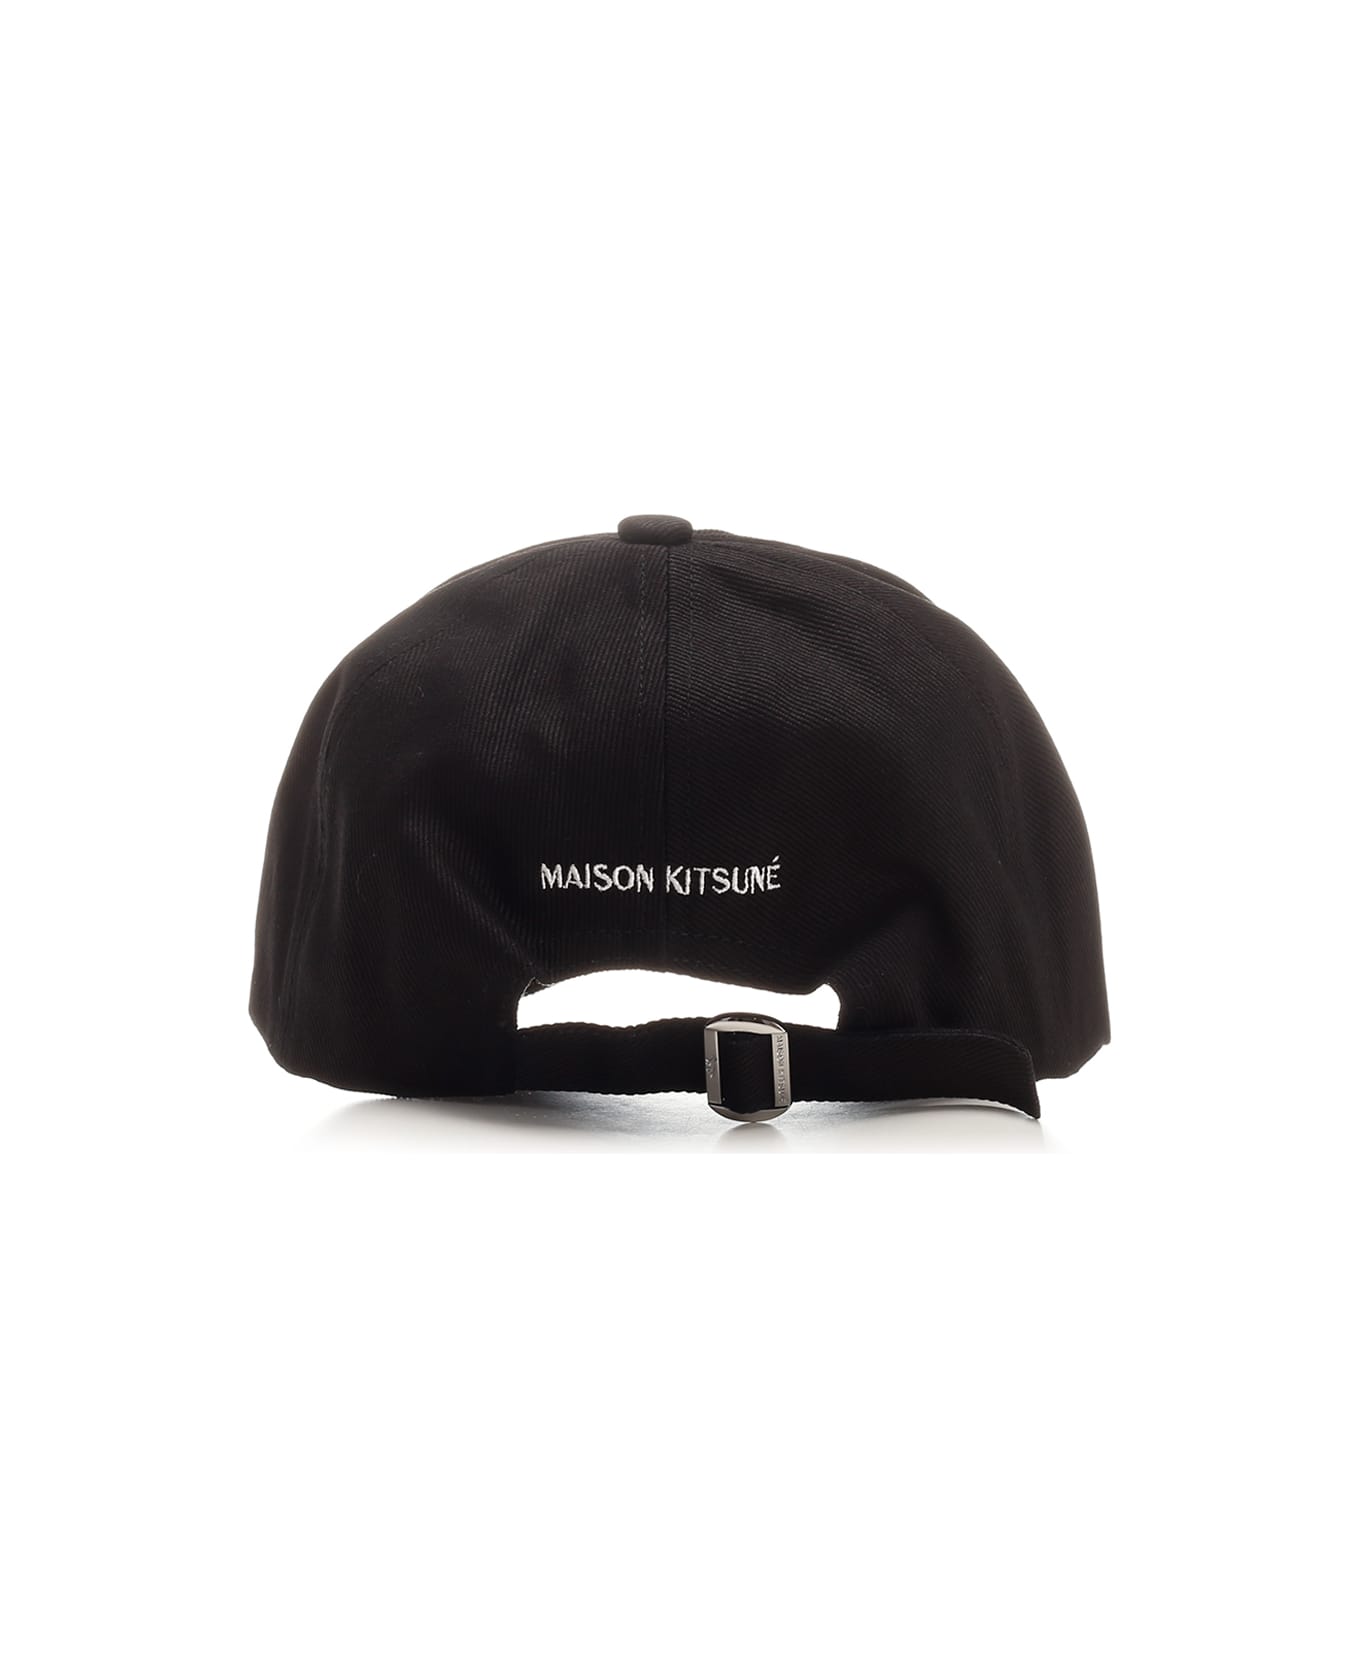 Maison Kitsuné Black Cap With Patch - Black 帽子